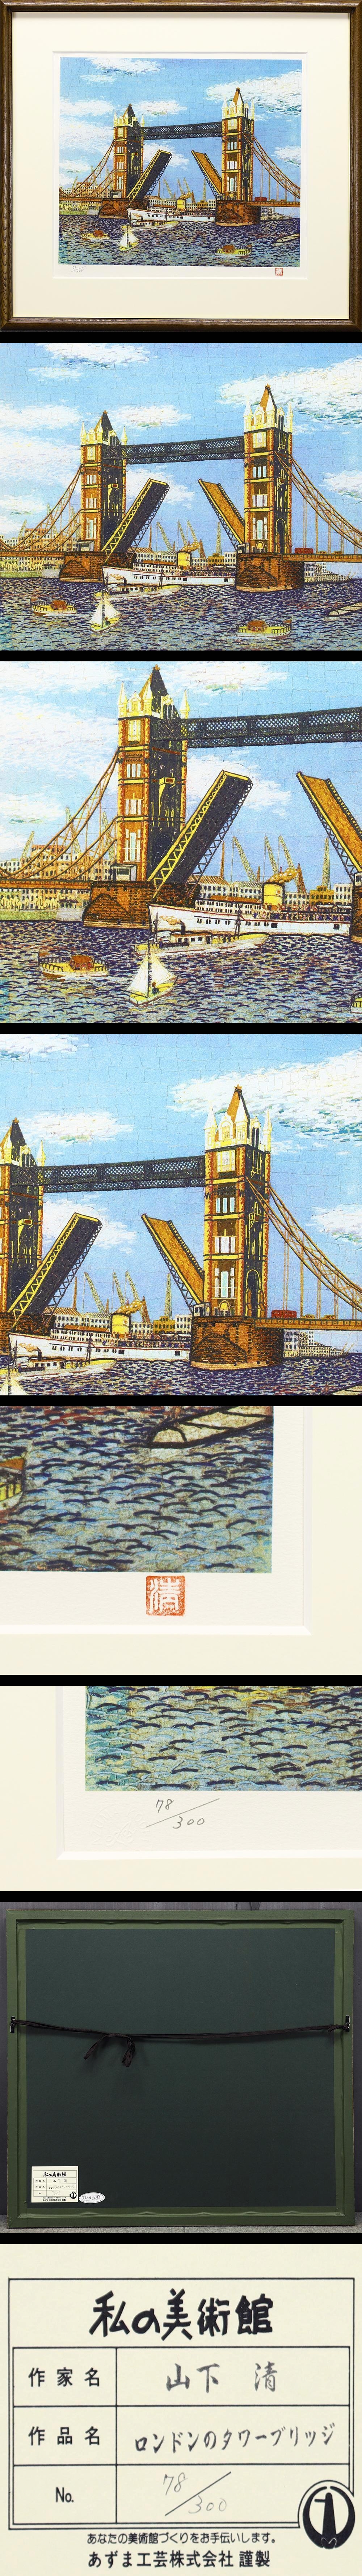 山下清 「ロンドンのタワーブリッジ」 リトグラフ No.9／300 www 